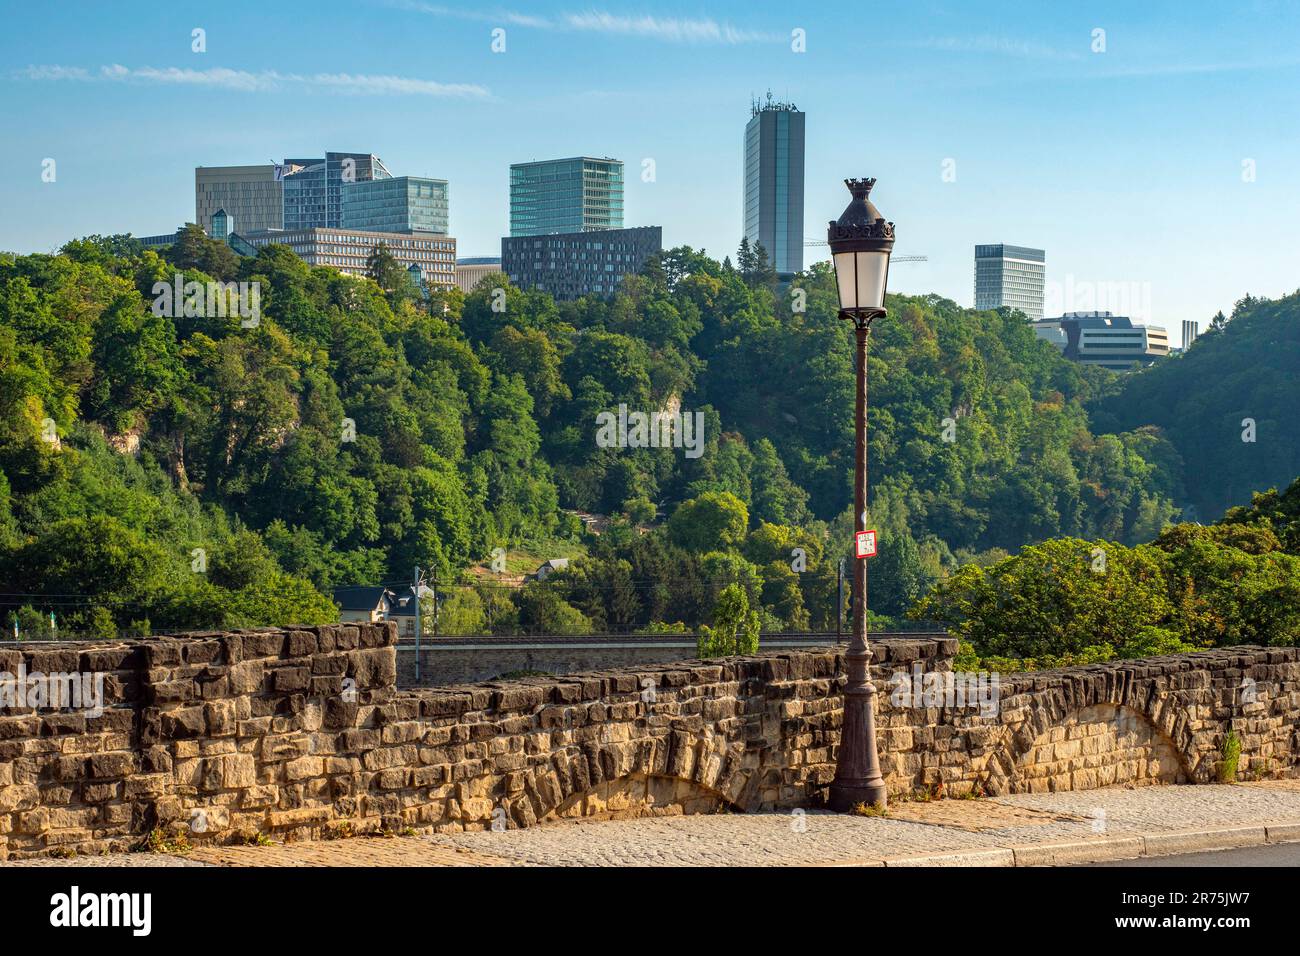 Vue de la vieille ville à Kirchberg, Luxembourg, Benelux, pays du Benelux, Luxembourg Banque D'Images